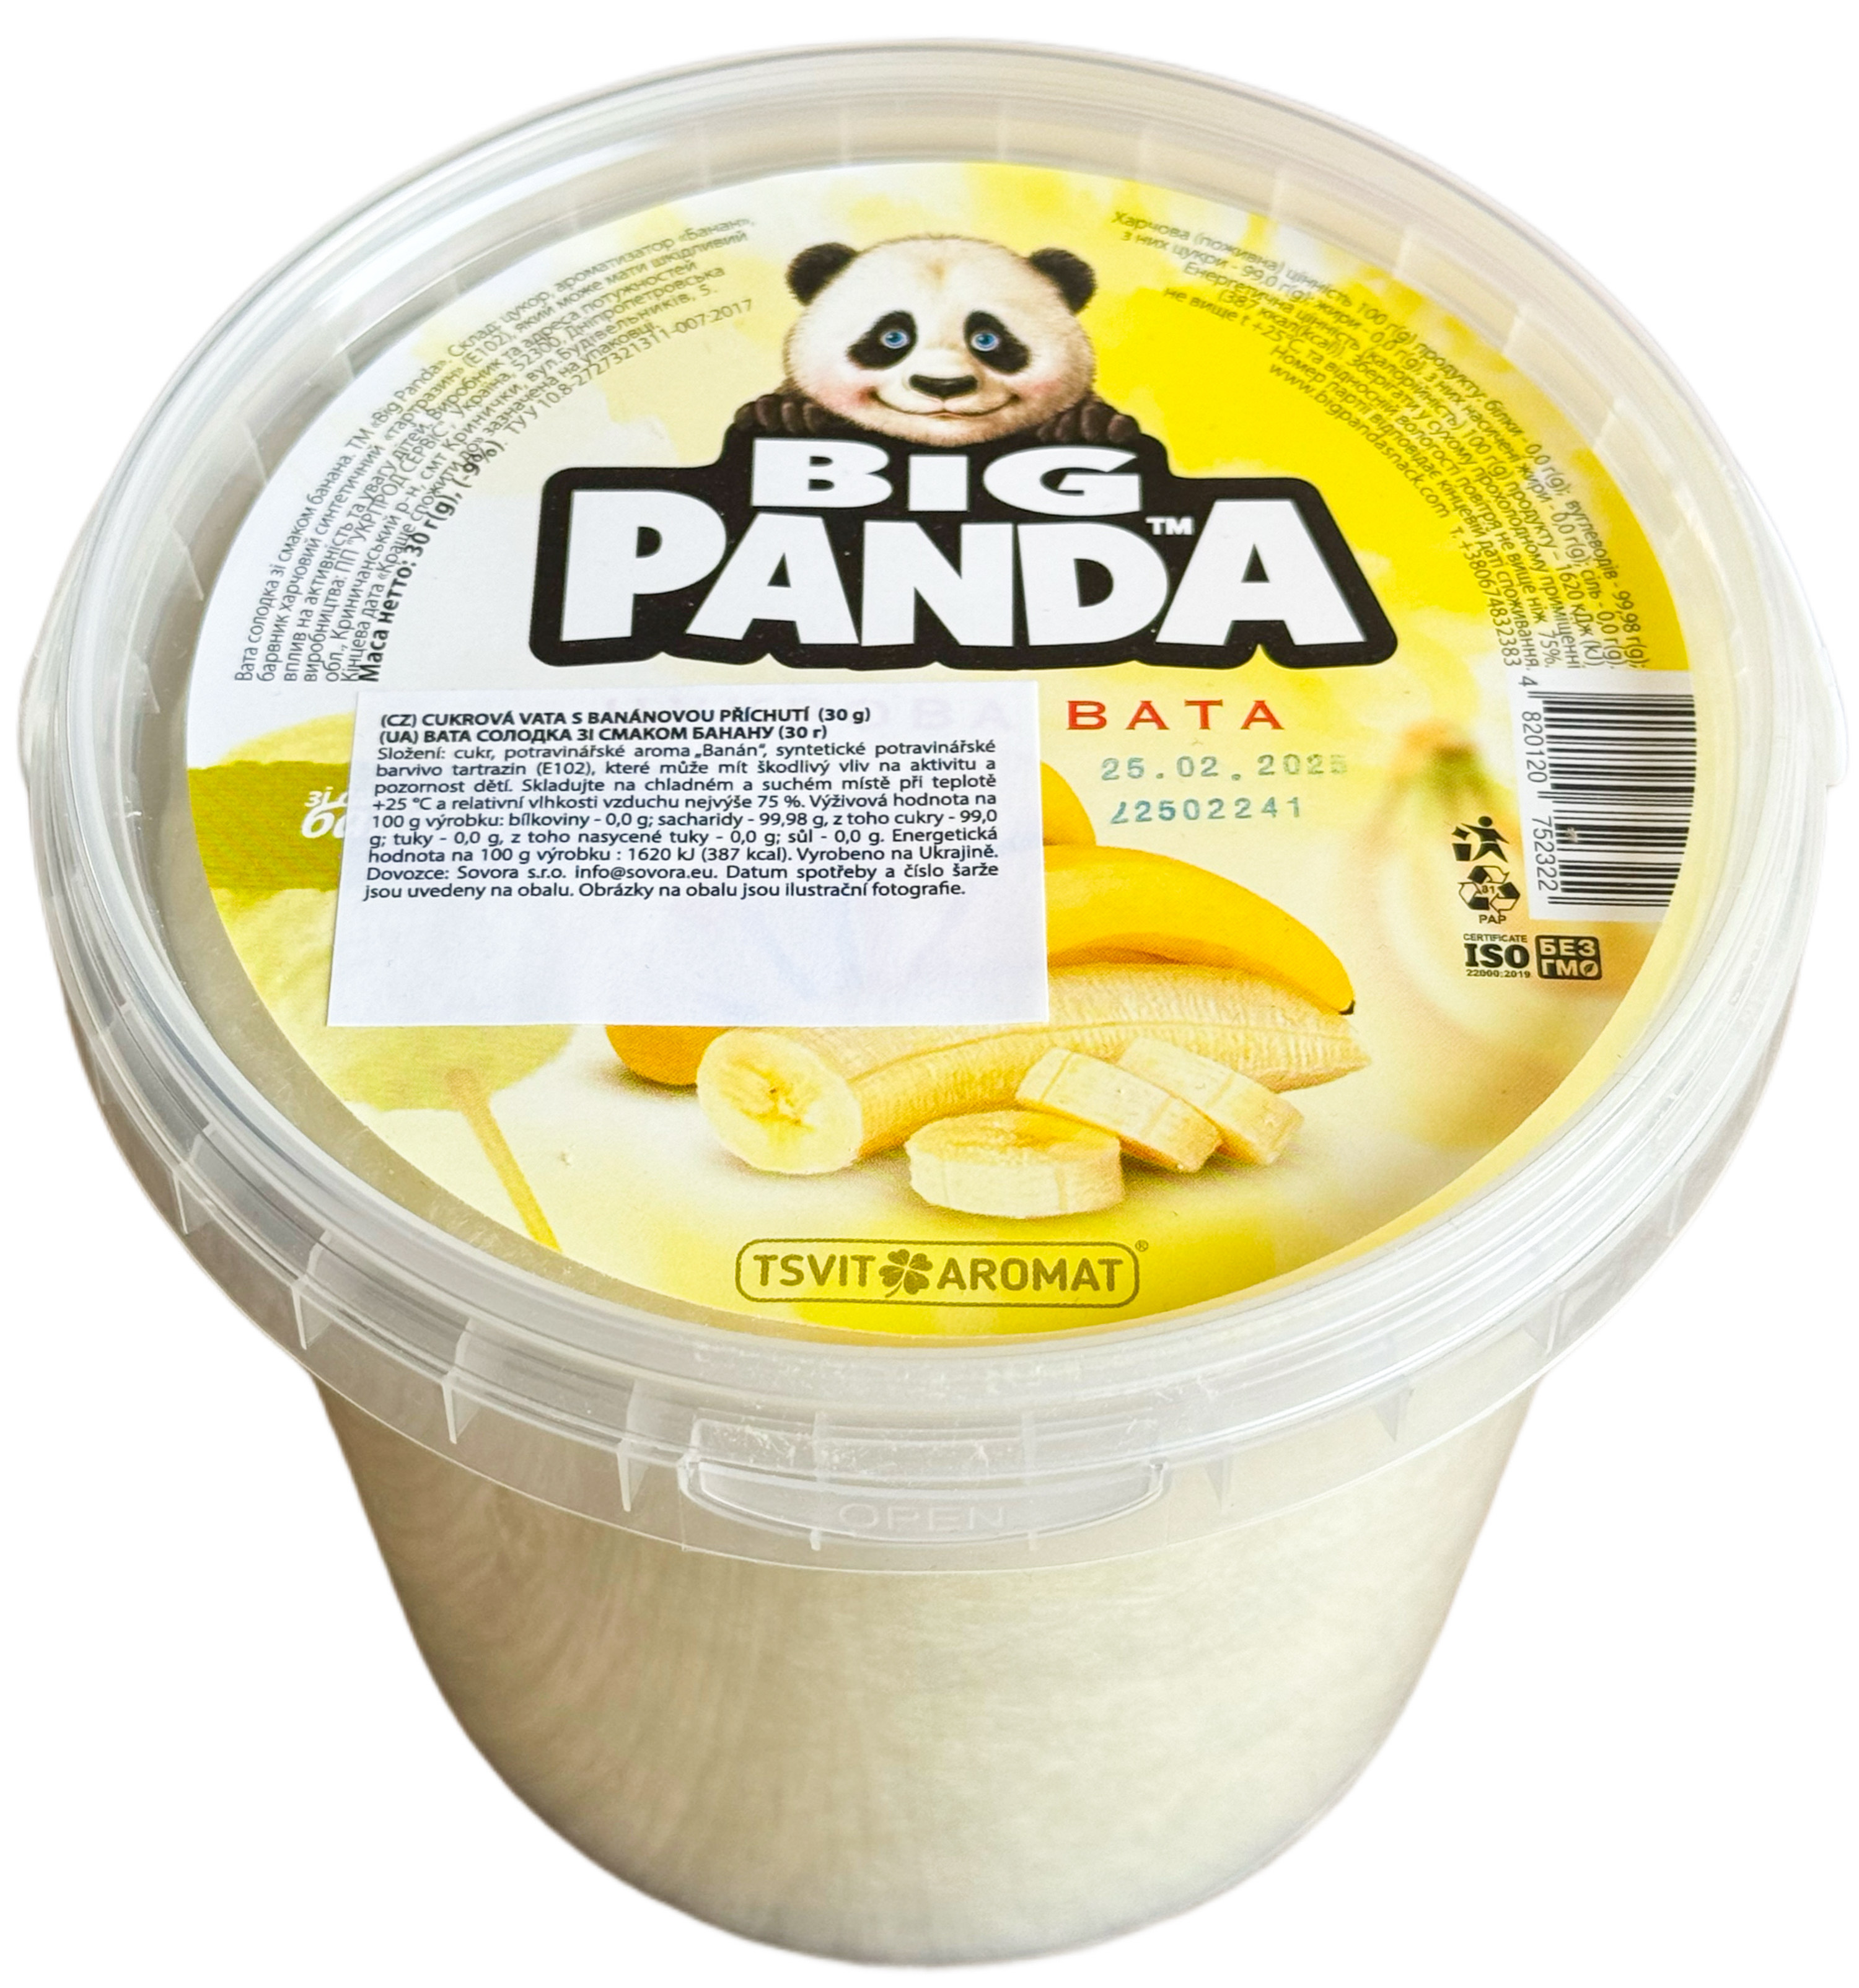 Cukrová vata s banánovou příchutí 30g Big Panda